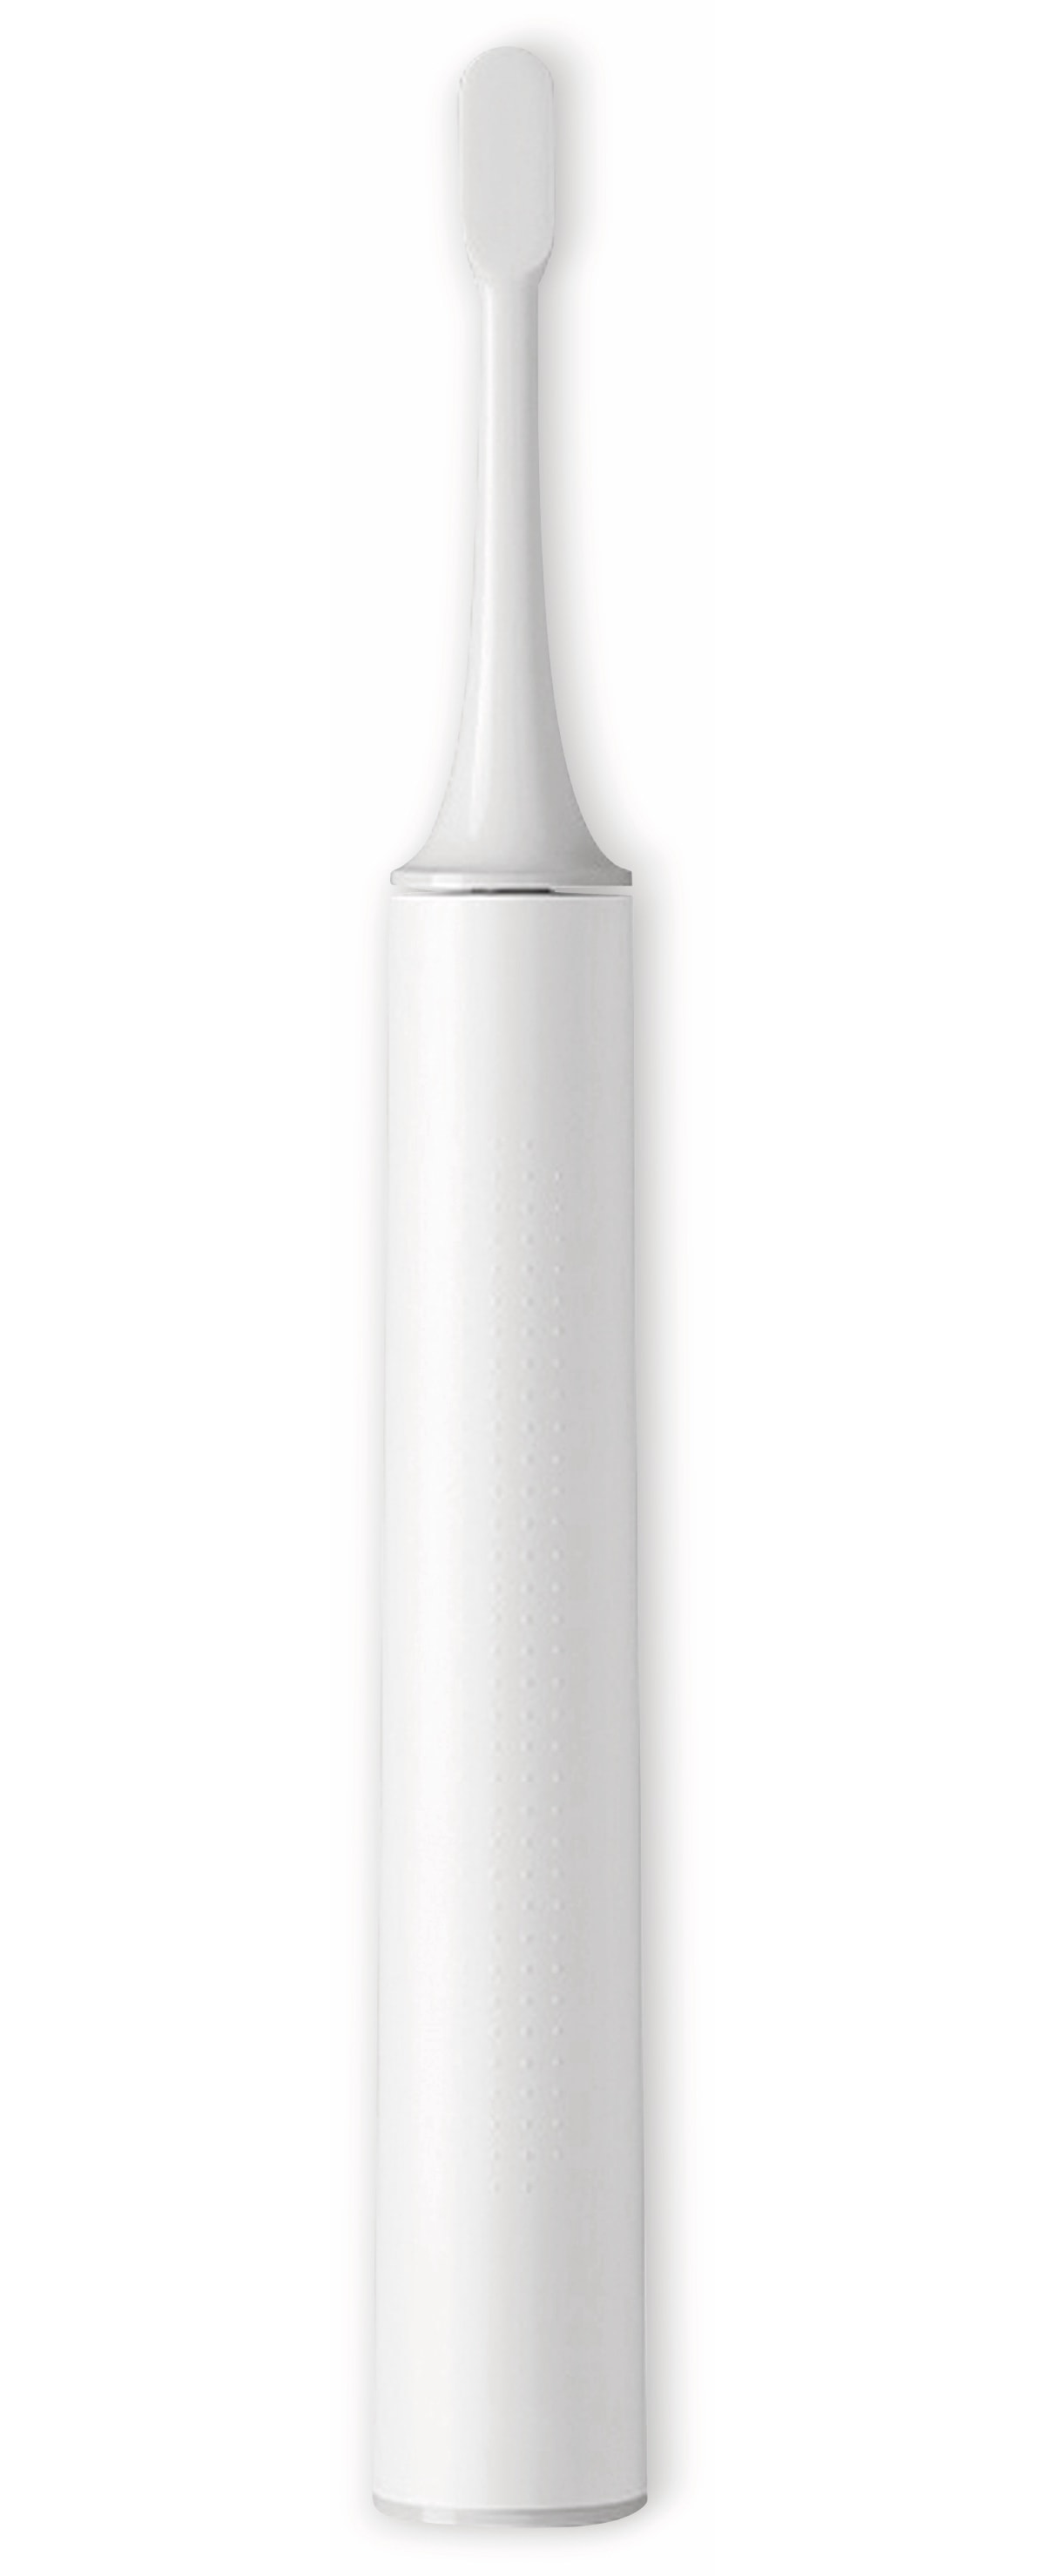 Xiaomi Elektrische Zahnbürste Mi T500